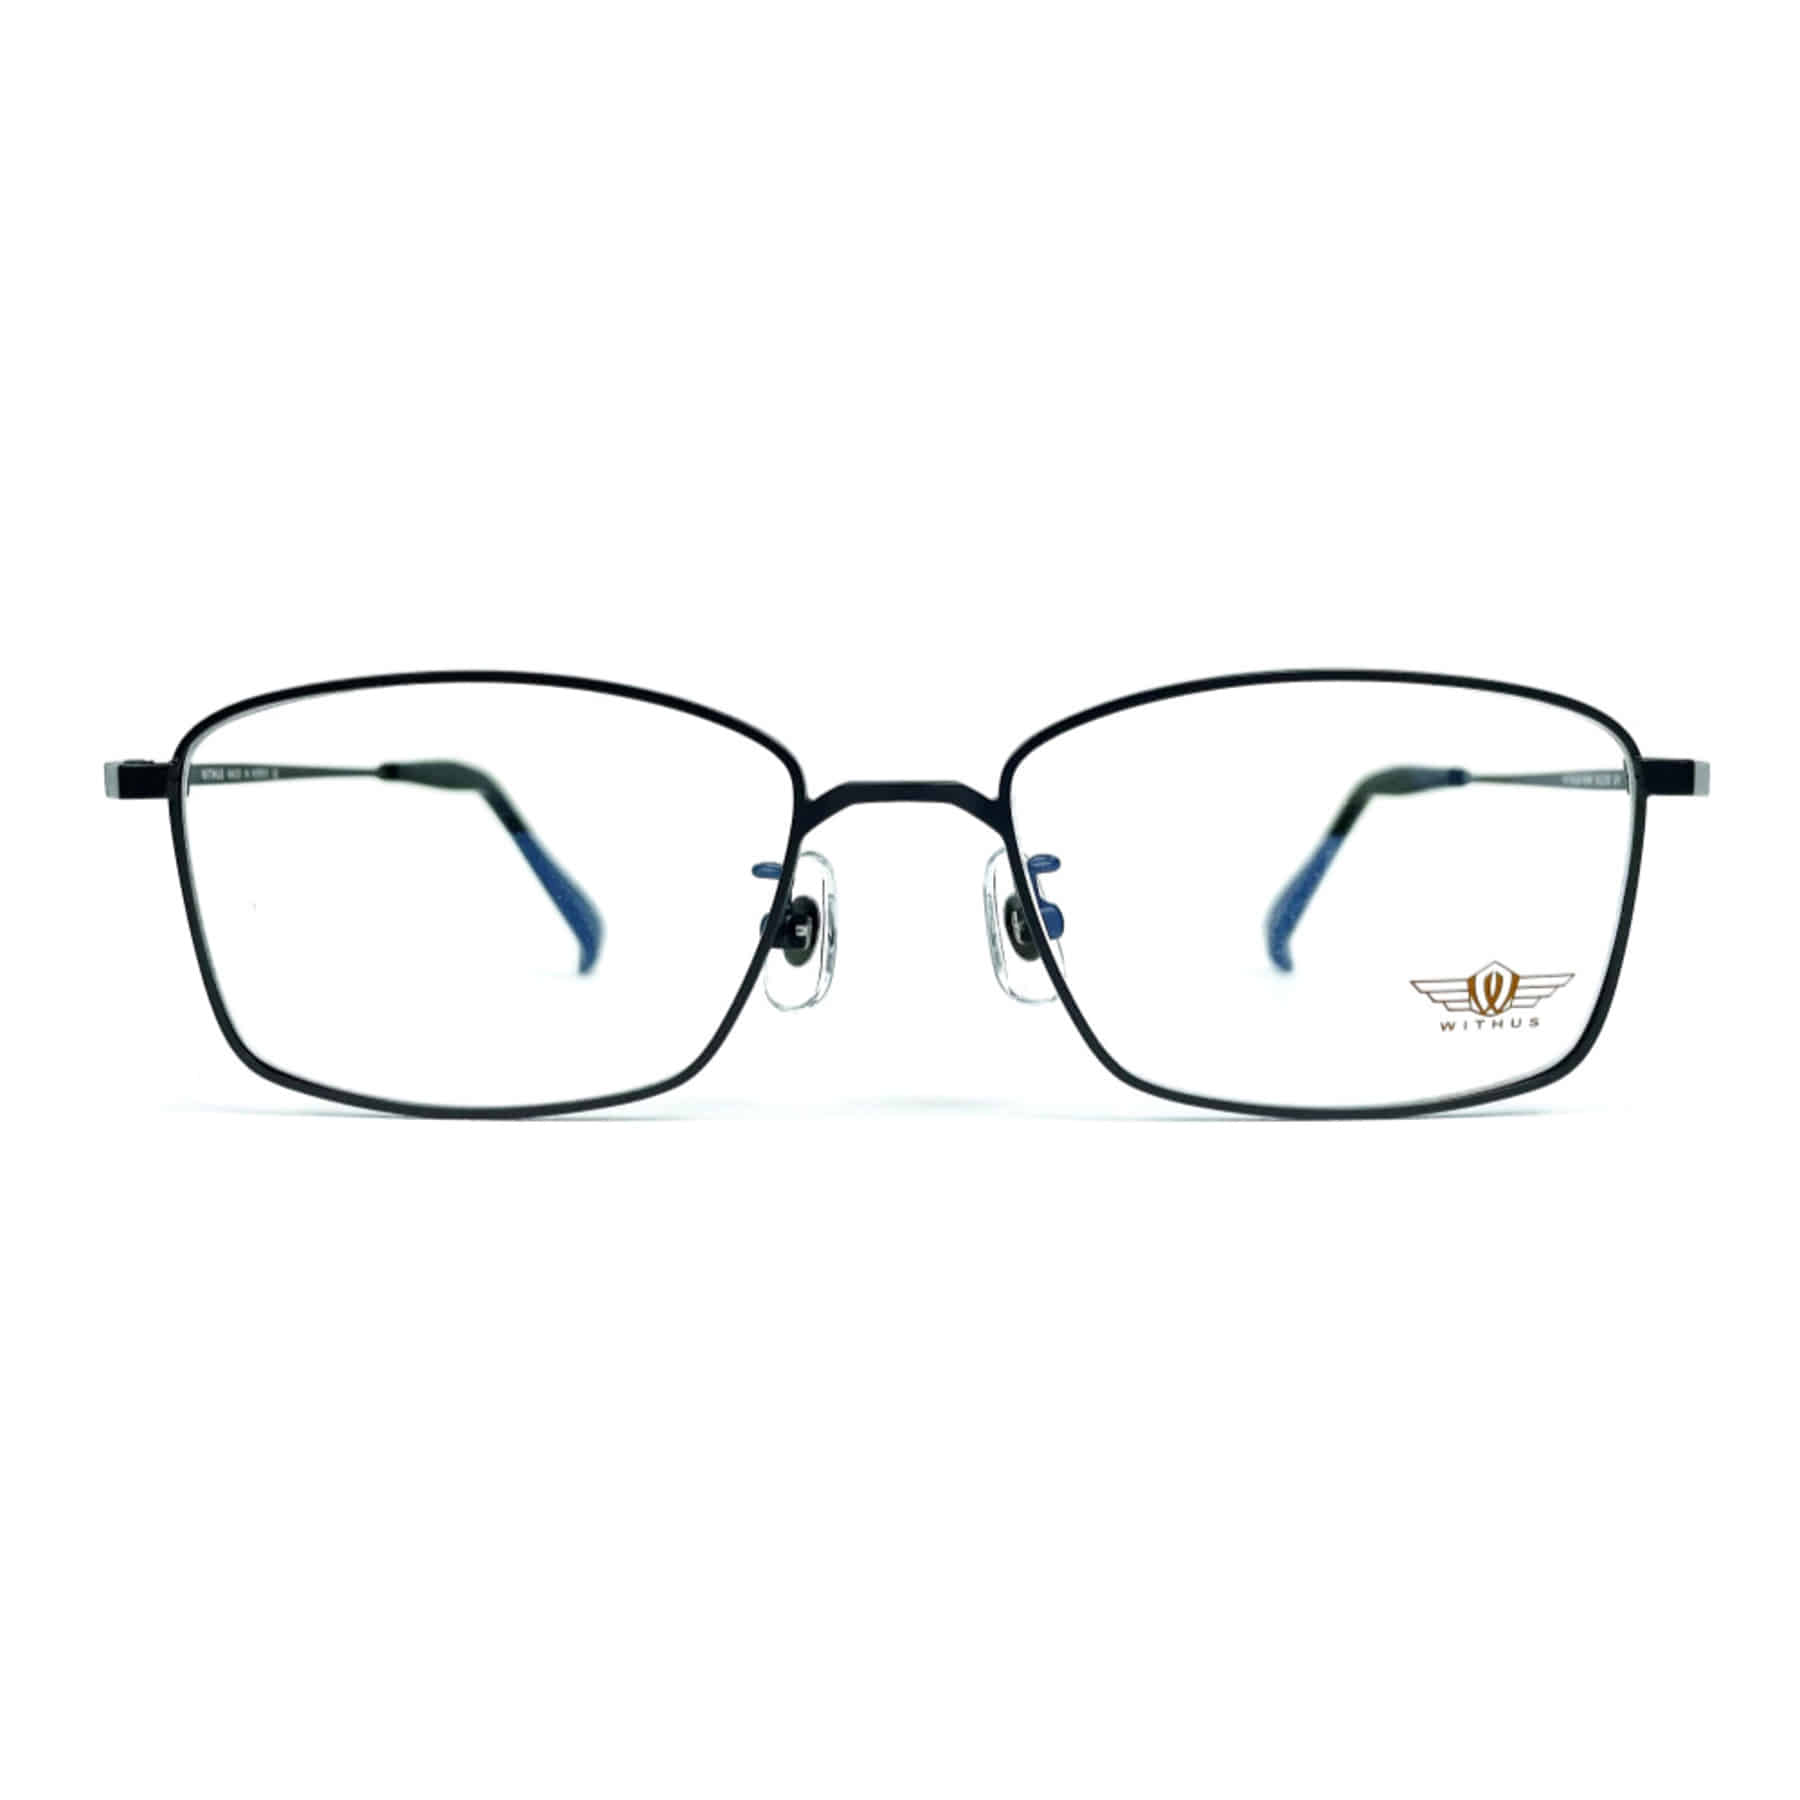 WITHUS-7424, Korean glasses, sunglasses, eyeglasses, glasses